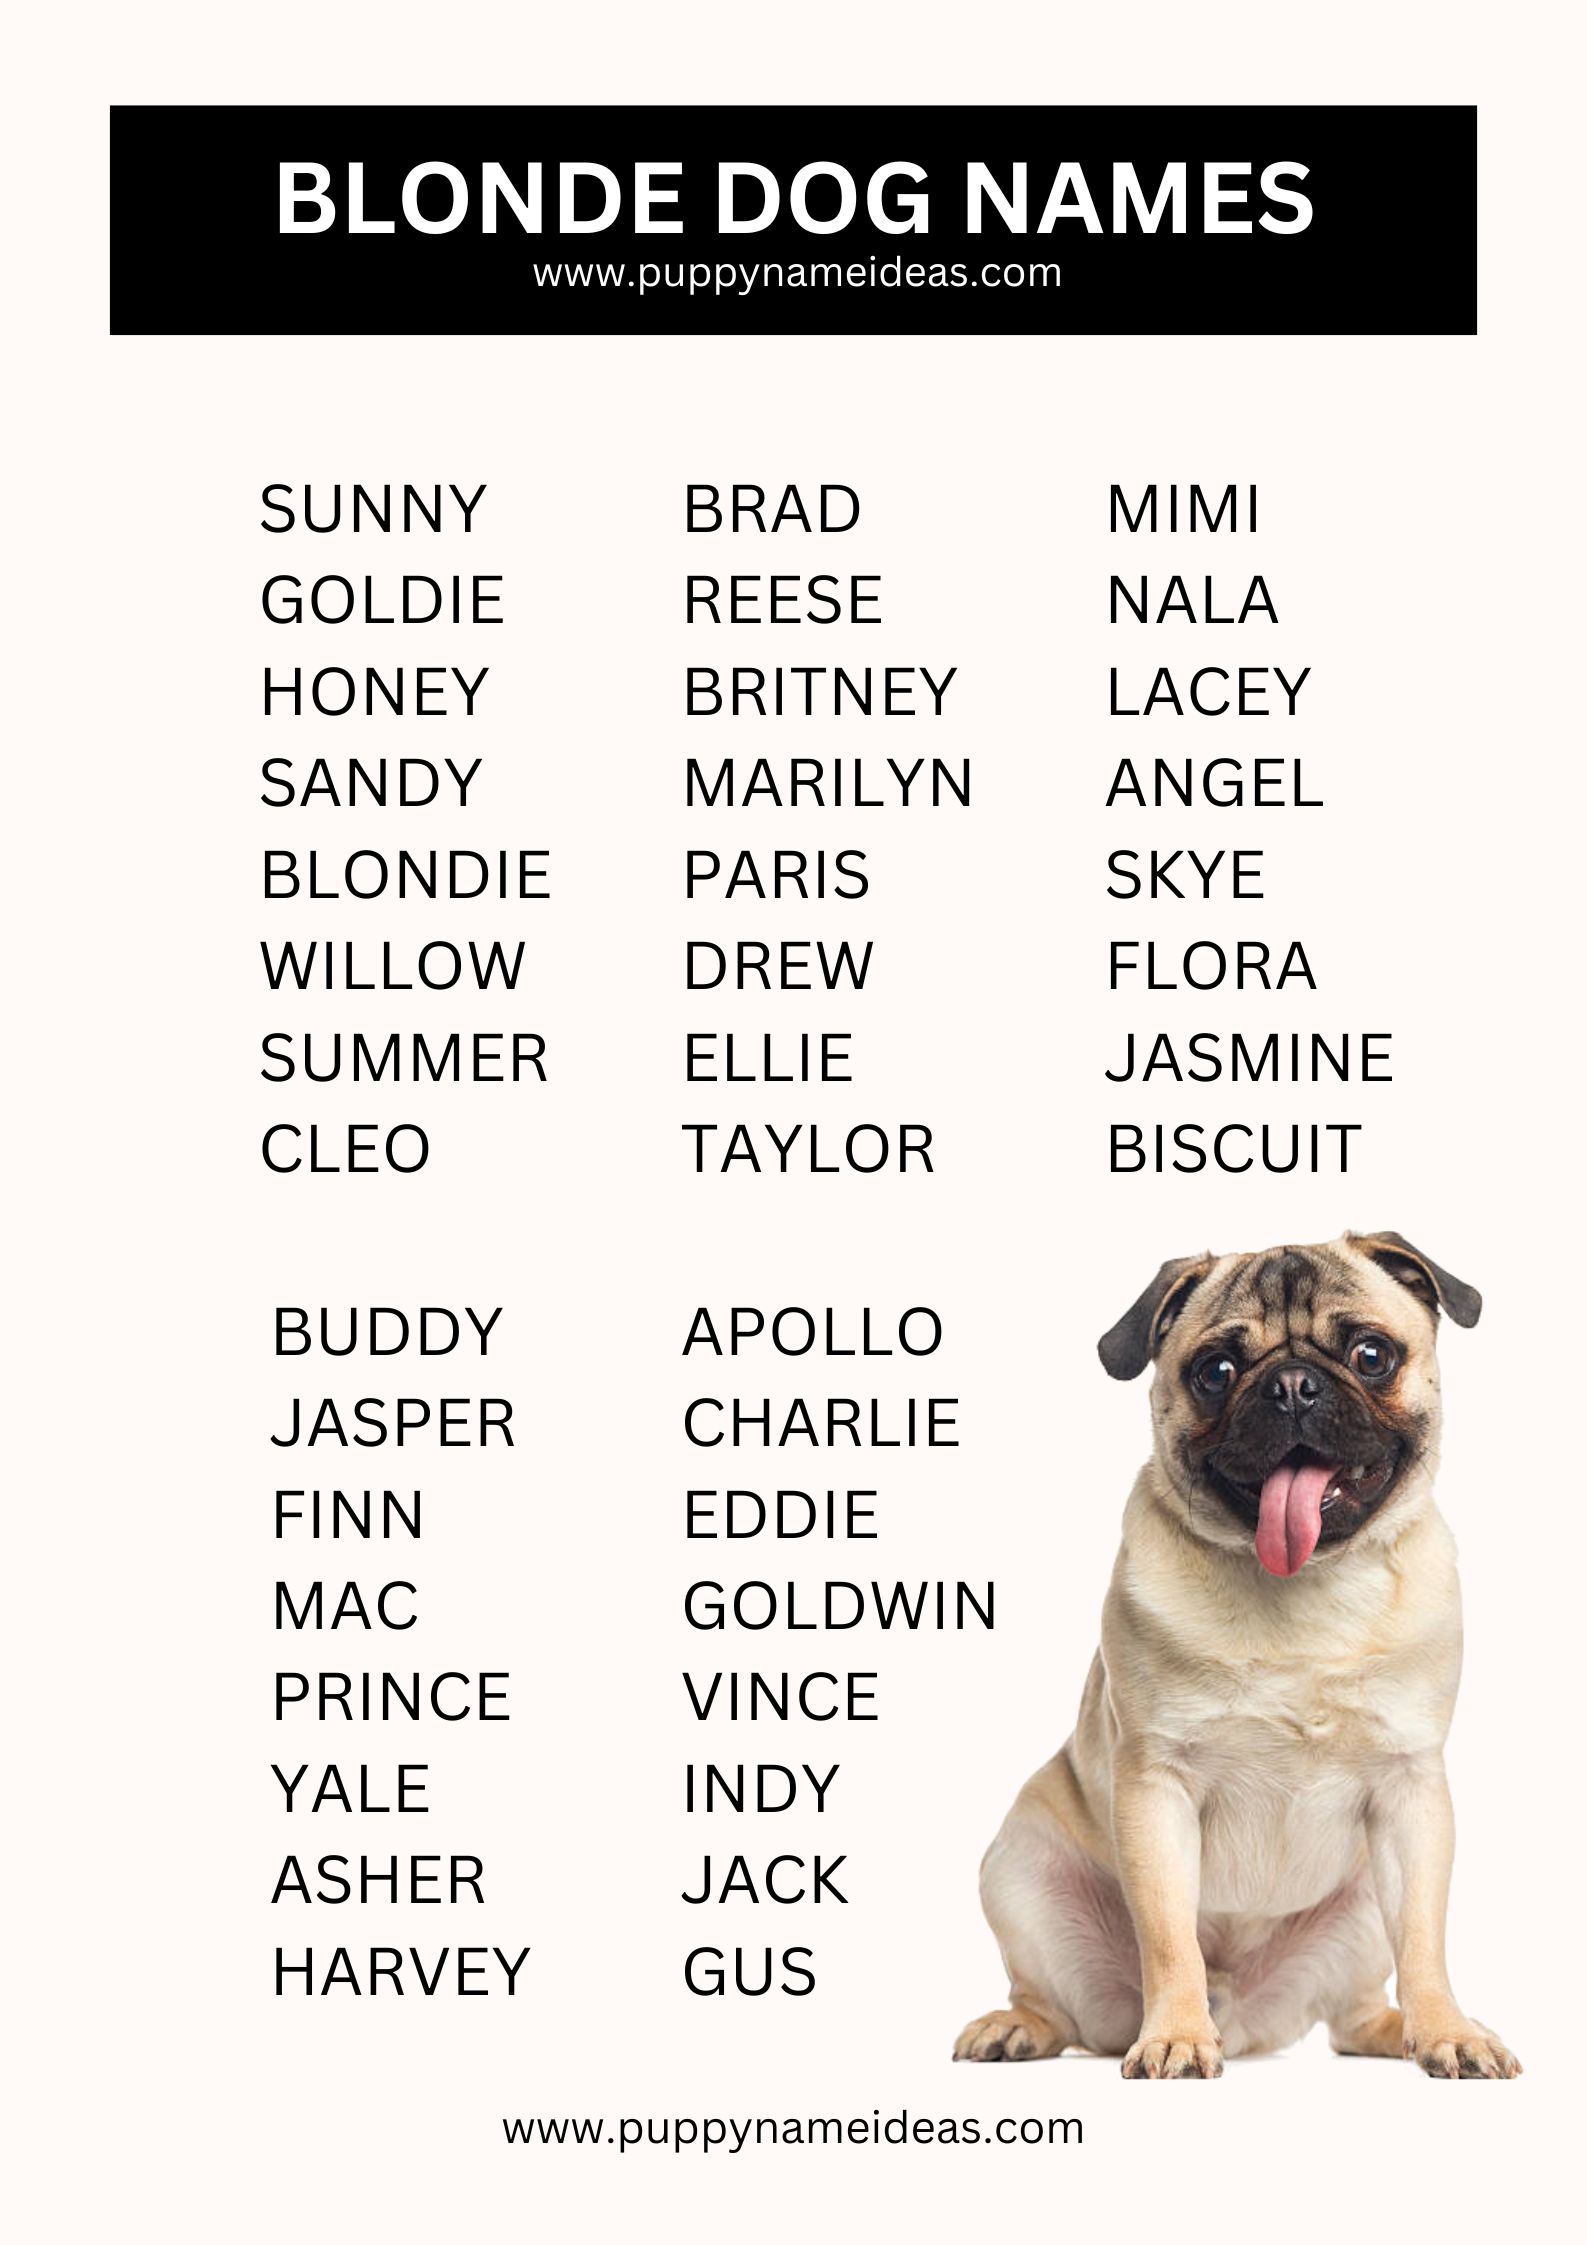 List Of Blonde Dog Names